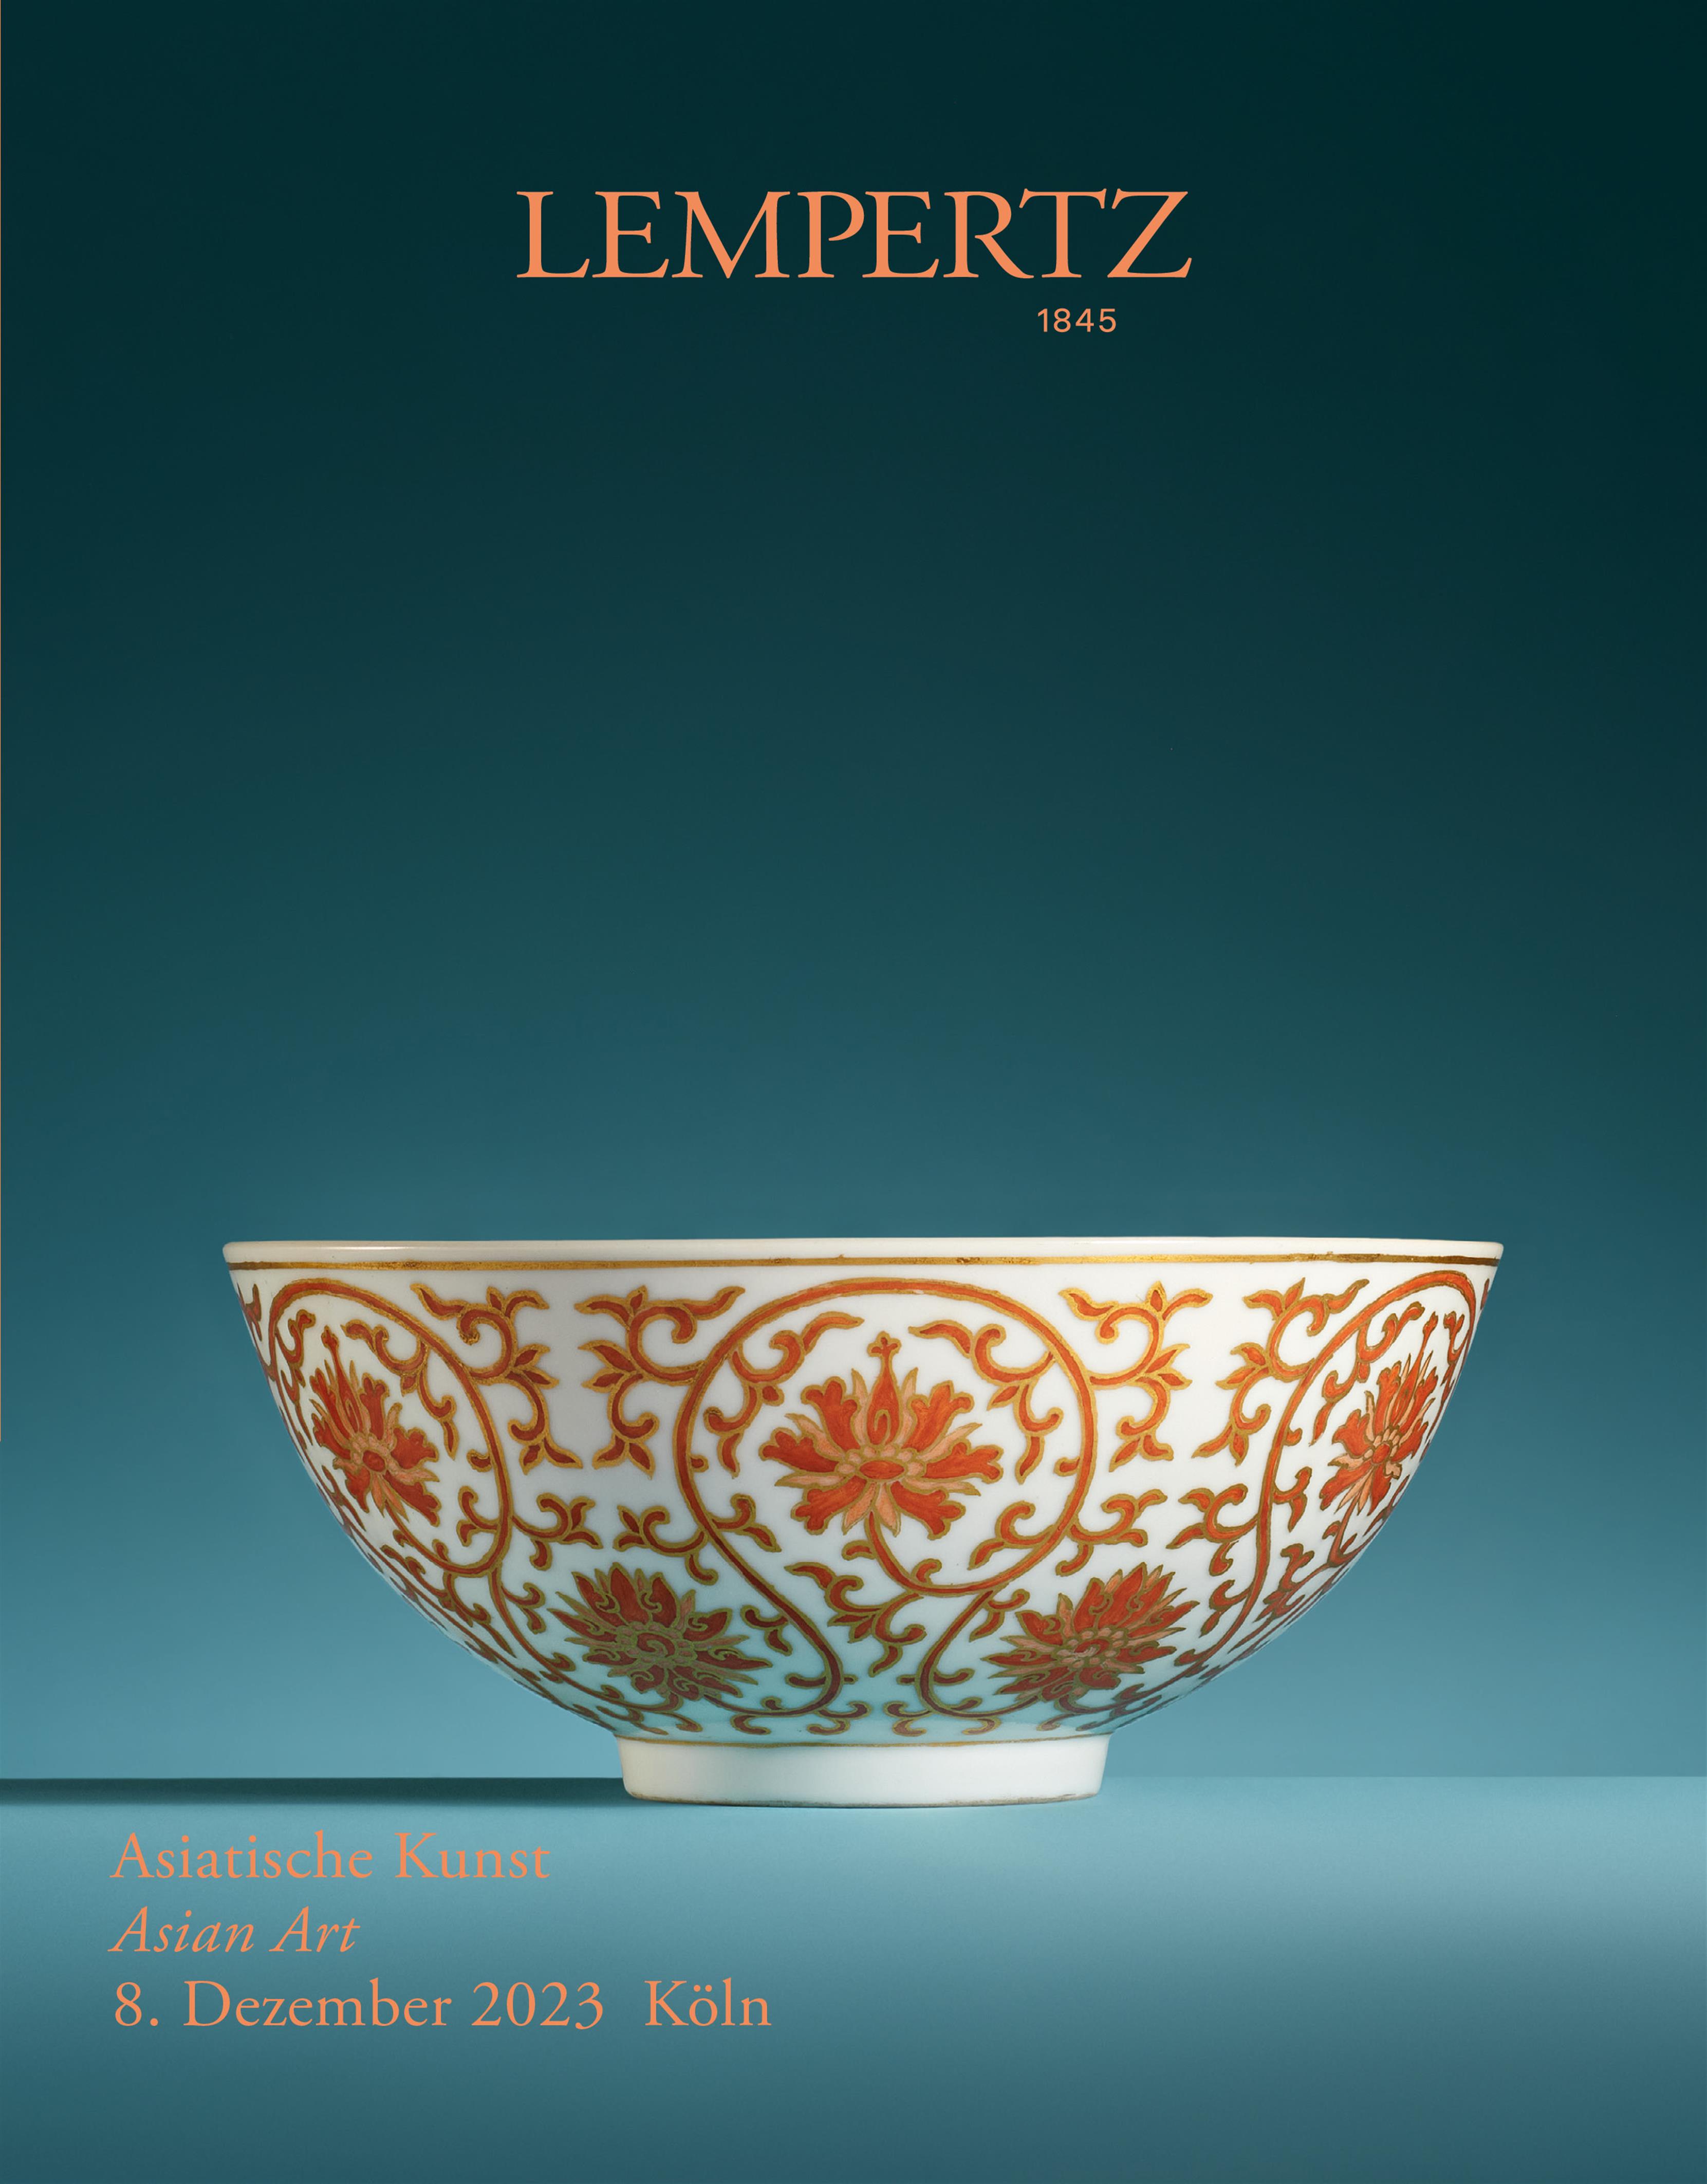 Auktionskatalog - Asiatische Kunst - Online Katalog - Auktion 1235 – Ersteigern Sie hochwertige Kunst in der nächsten Lempertz-Auktion!